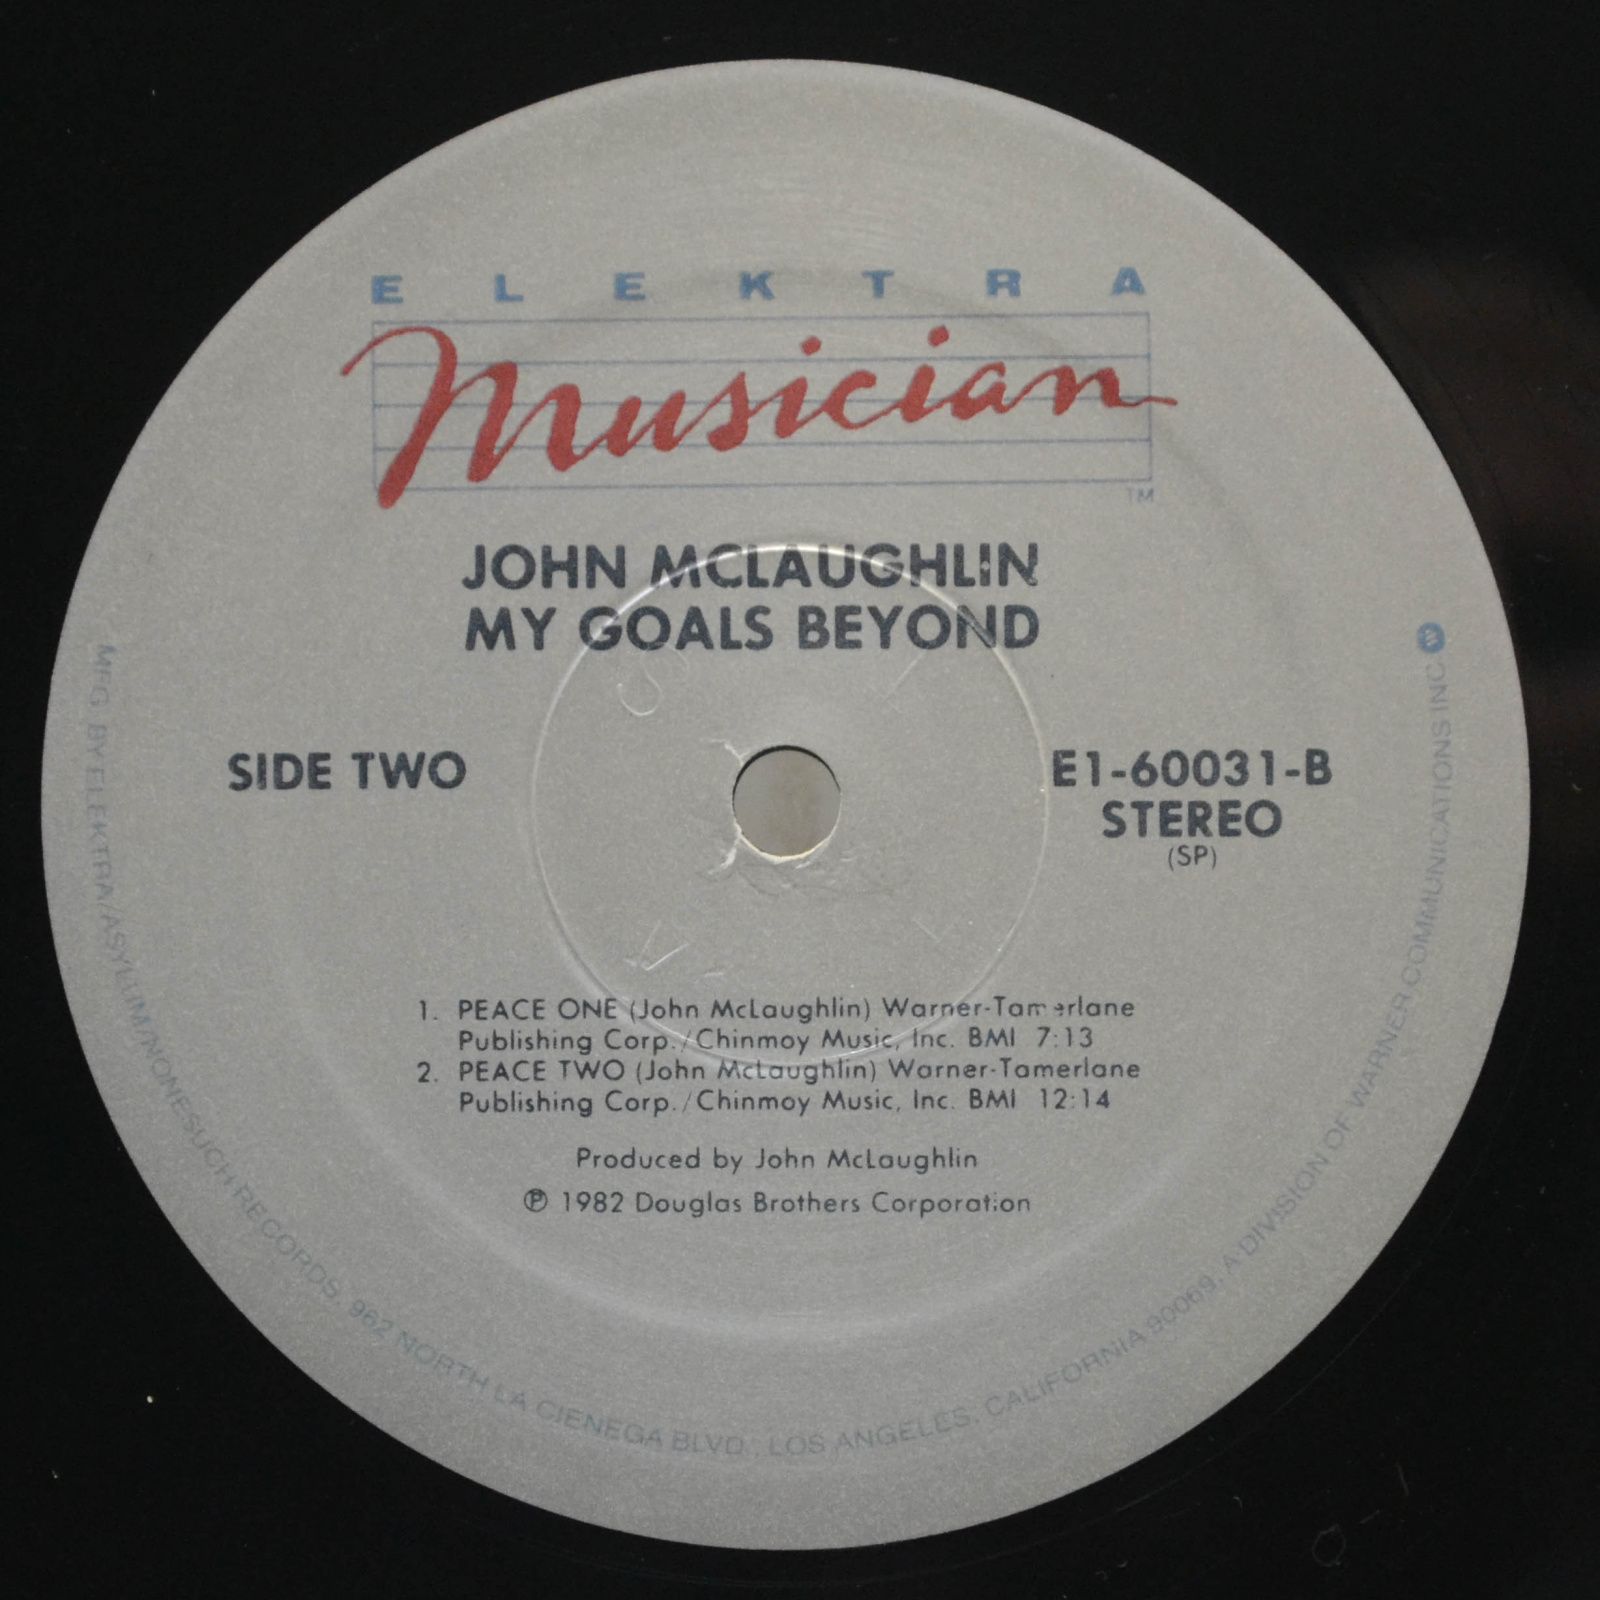 John McLaughlin — My Goals Beyond (USA), 1971